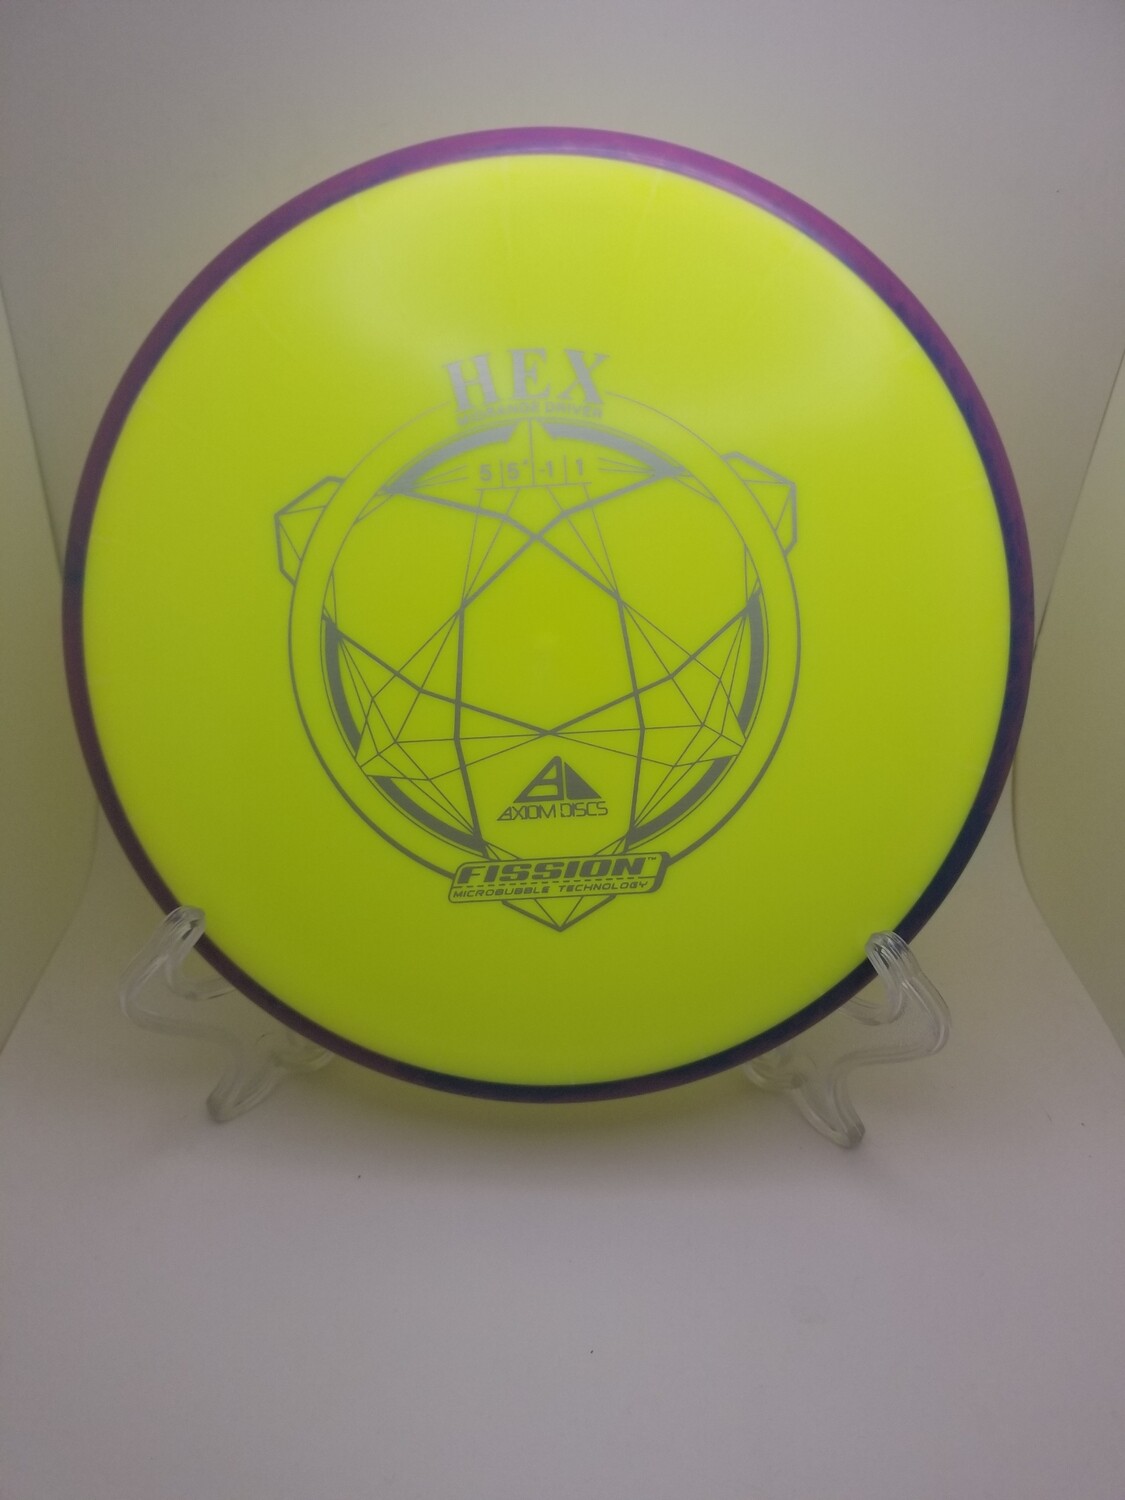 Axiom Discs Hex Fission Neon Yellow Plate Purple Rim 170g